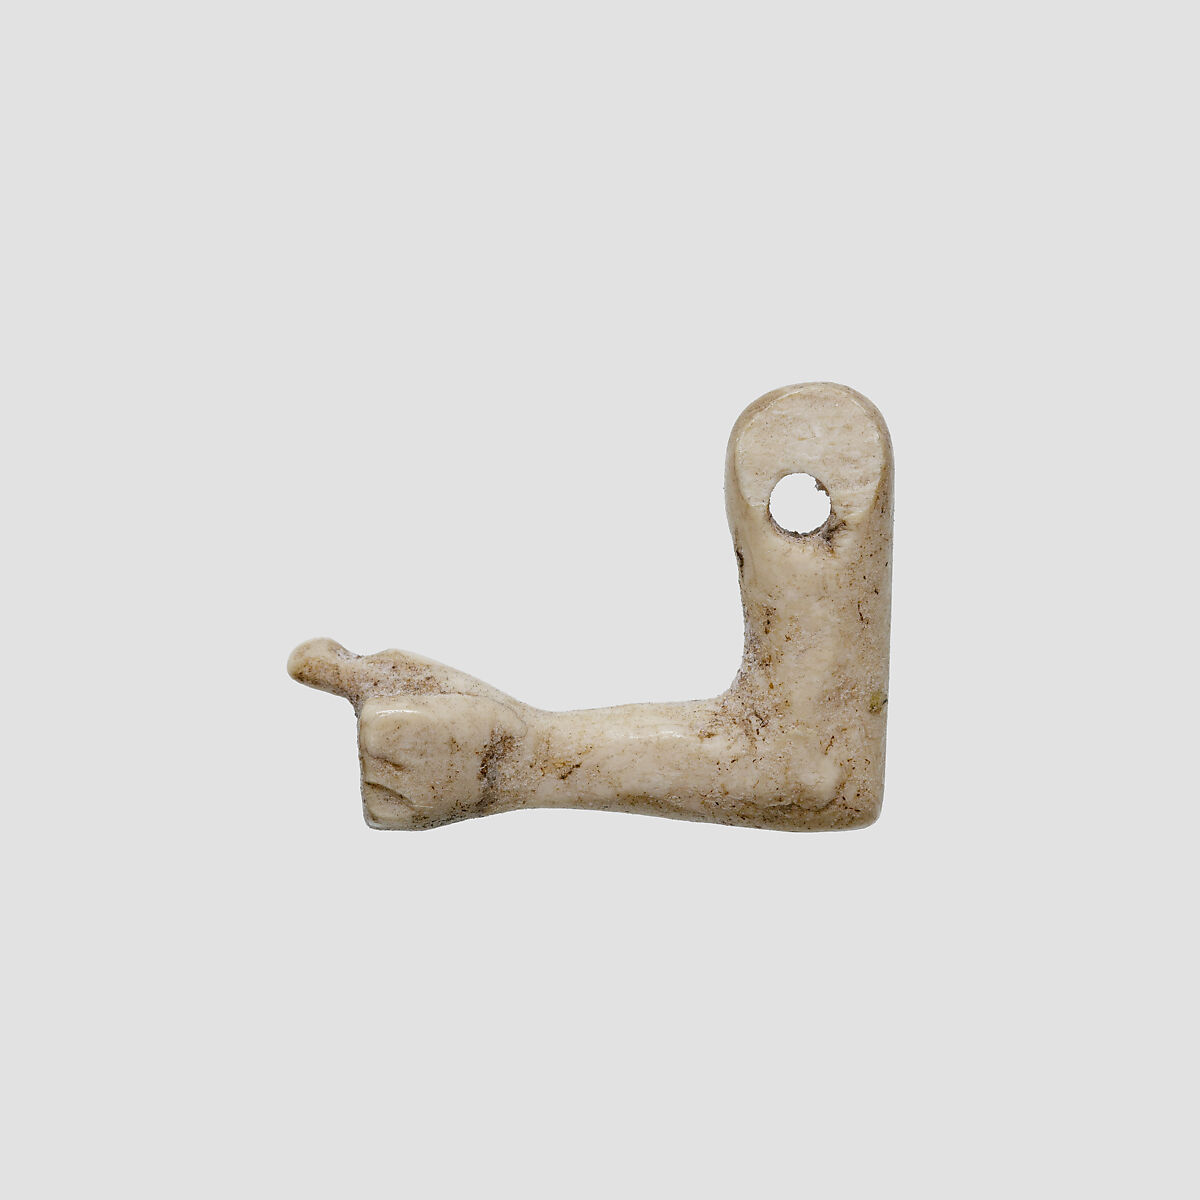 Arm amulet, Ivory or bone 